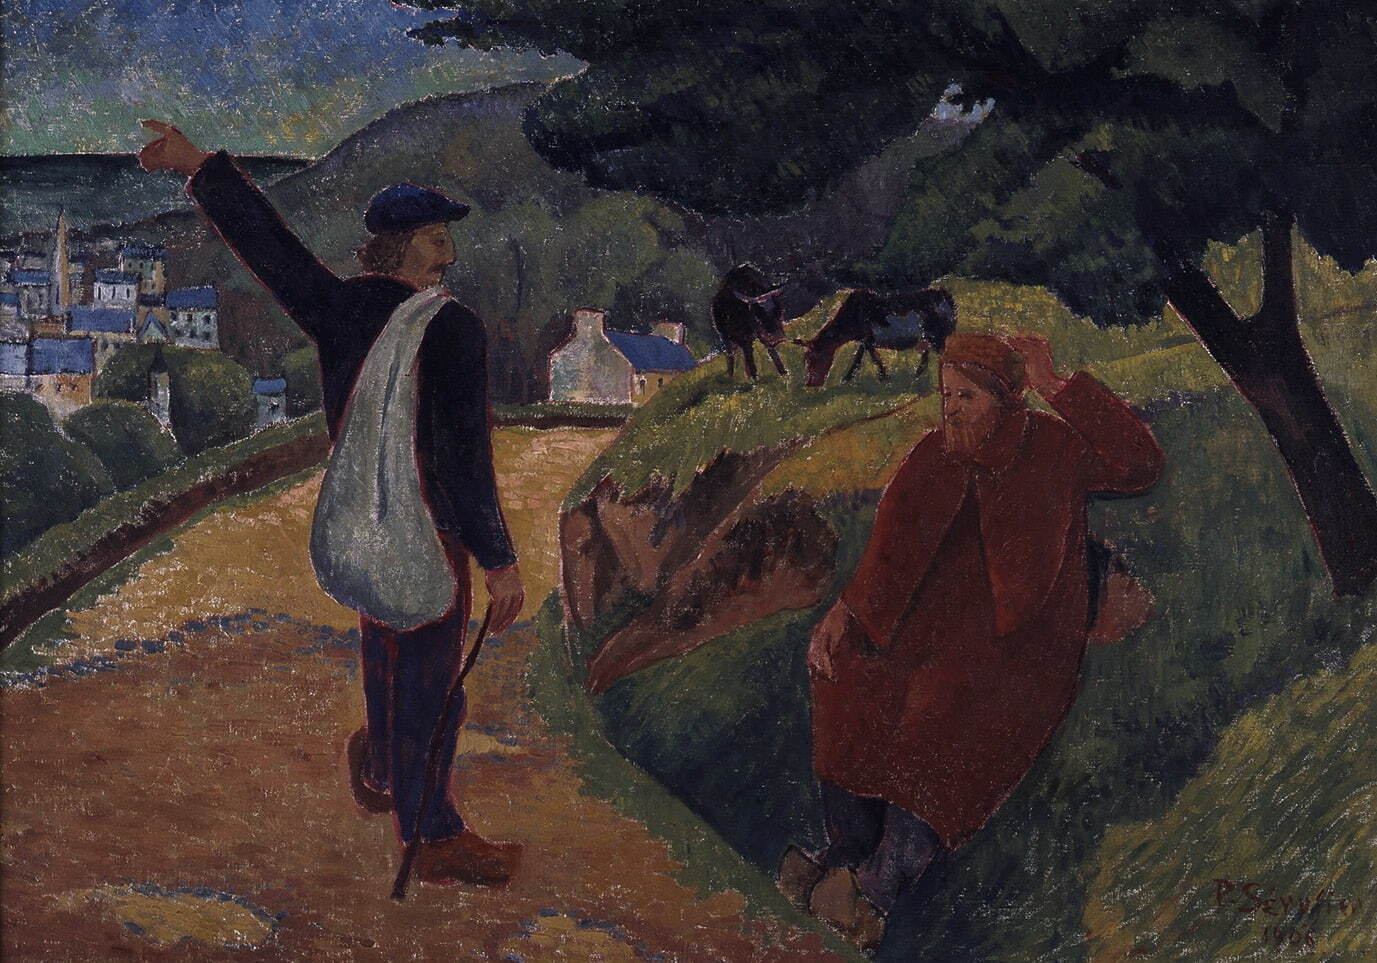 ポール・セリュジエ 《さようなら、ゴーギャン》 1906年 カンペール美術館
Collection du musée des beaux-arts de Quimper, France